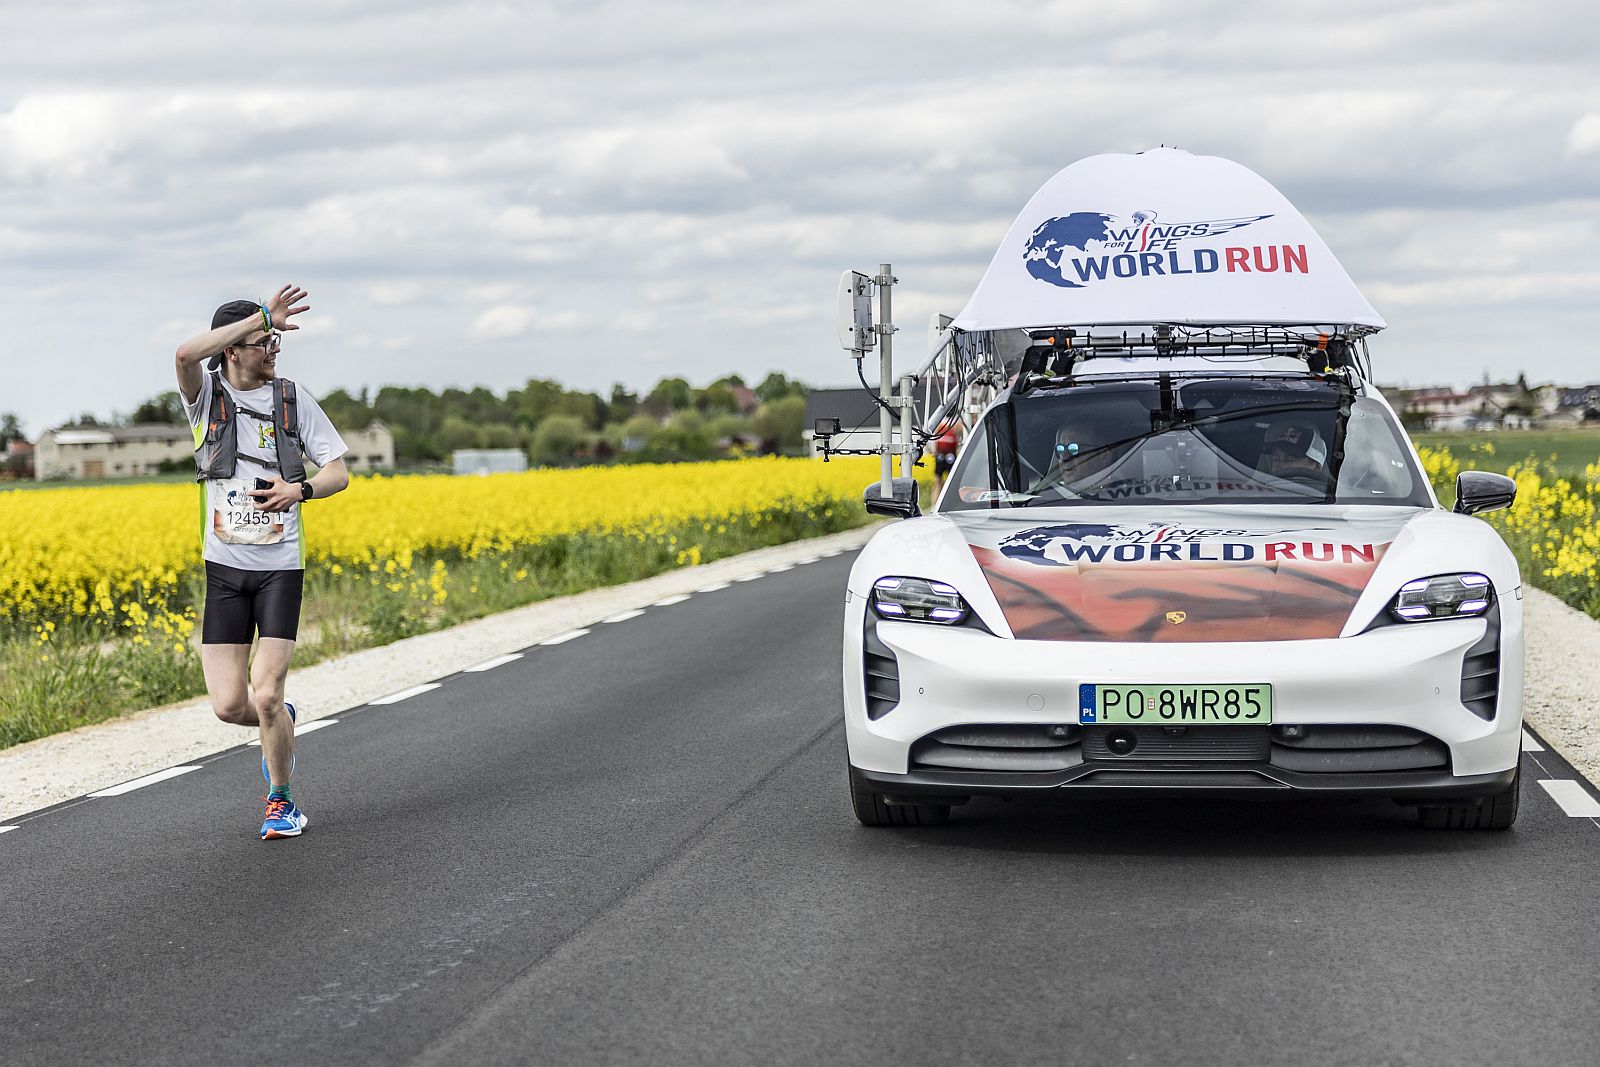 Samochód pościgowy ściga uczestnika na trasie biegu (fot.Marcin Kin)